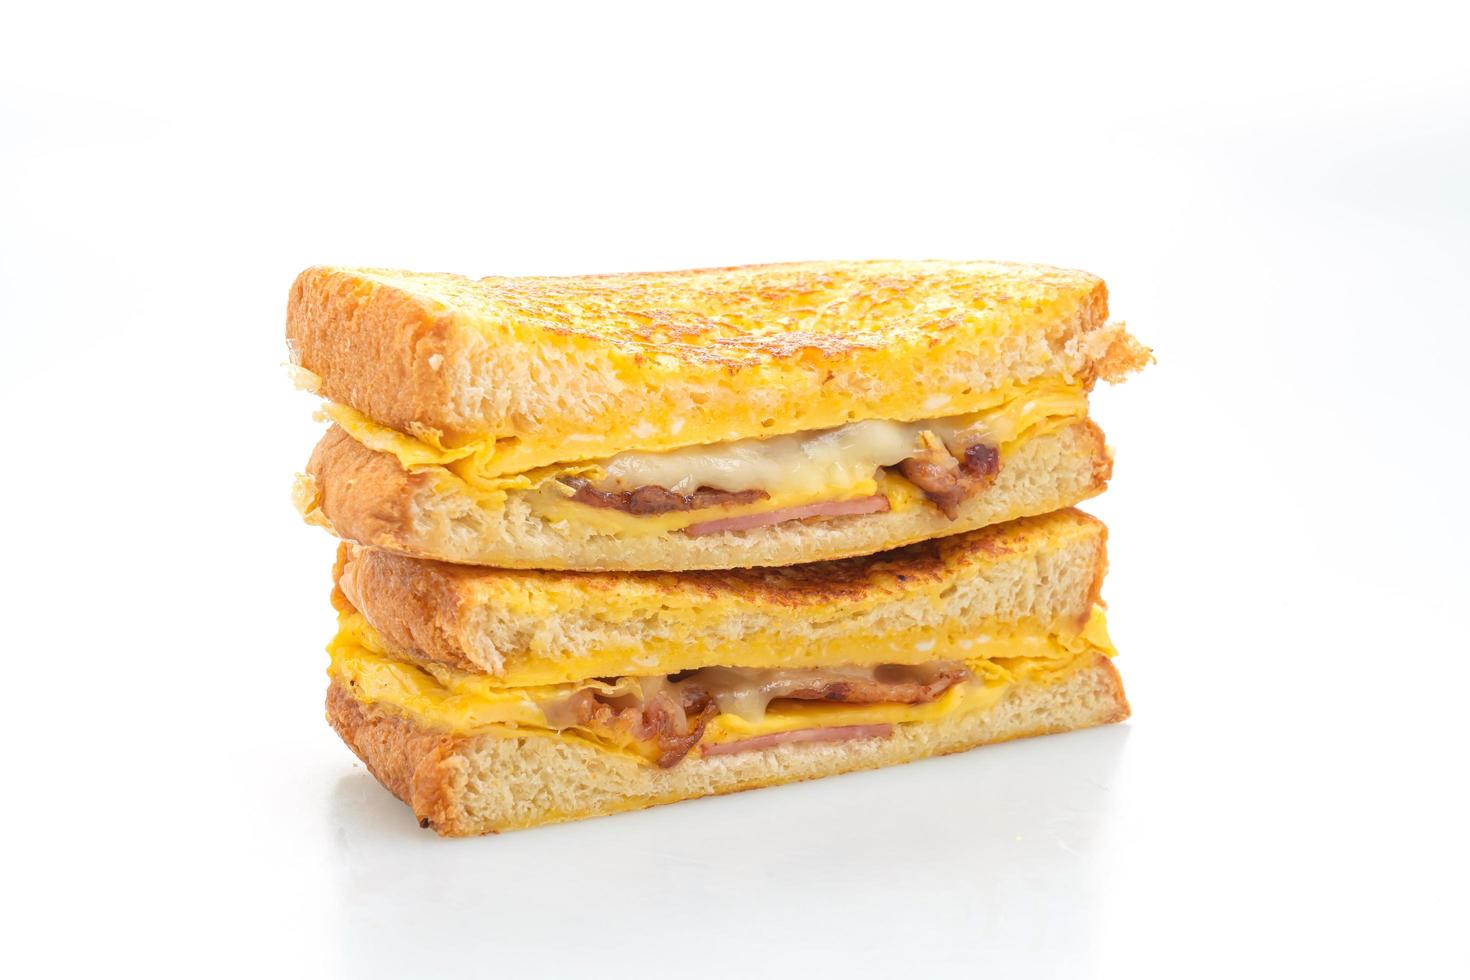 fransk toast skinka, bacon och ostsmörgås med ägg isolerad på vit bakgrund foto